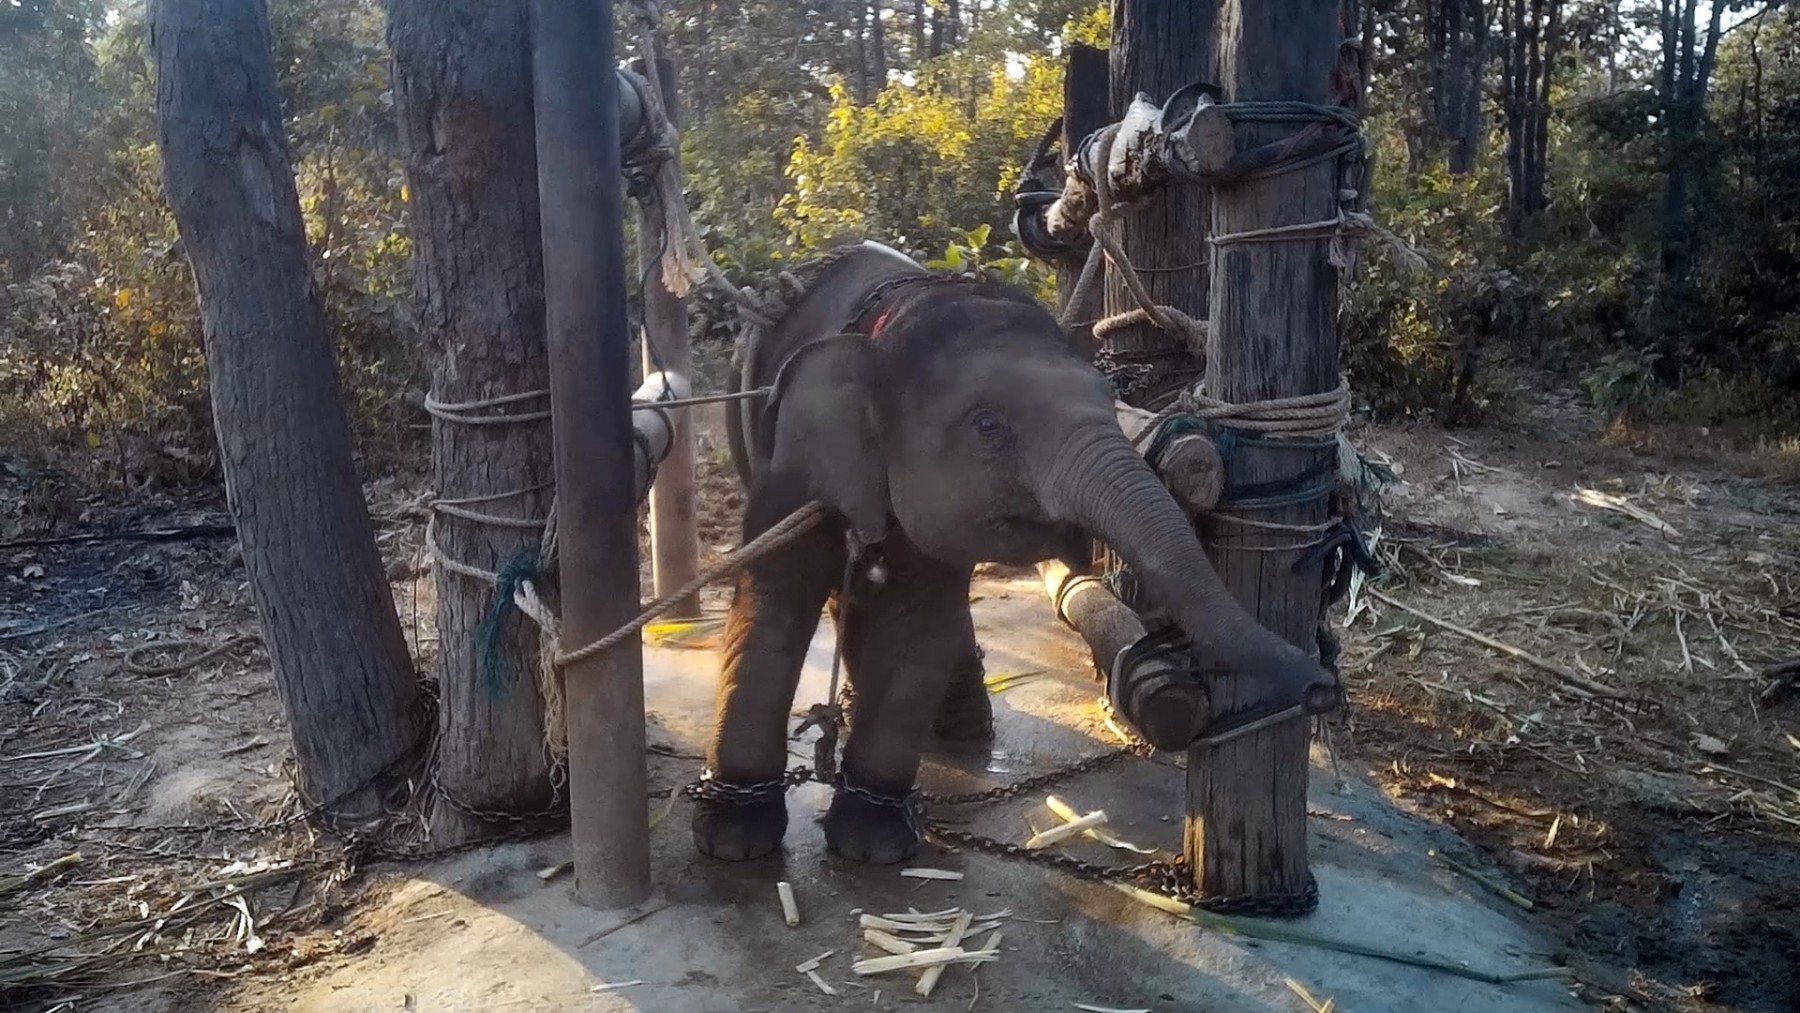 En elefantunge i Thailand bliver trænet med brutale metoder, så den kan bruges til elefantridning og -shows.